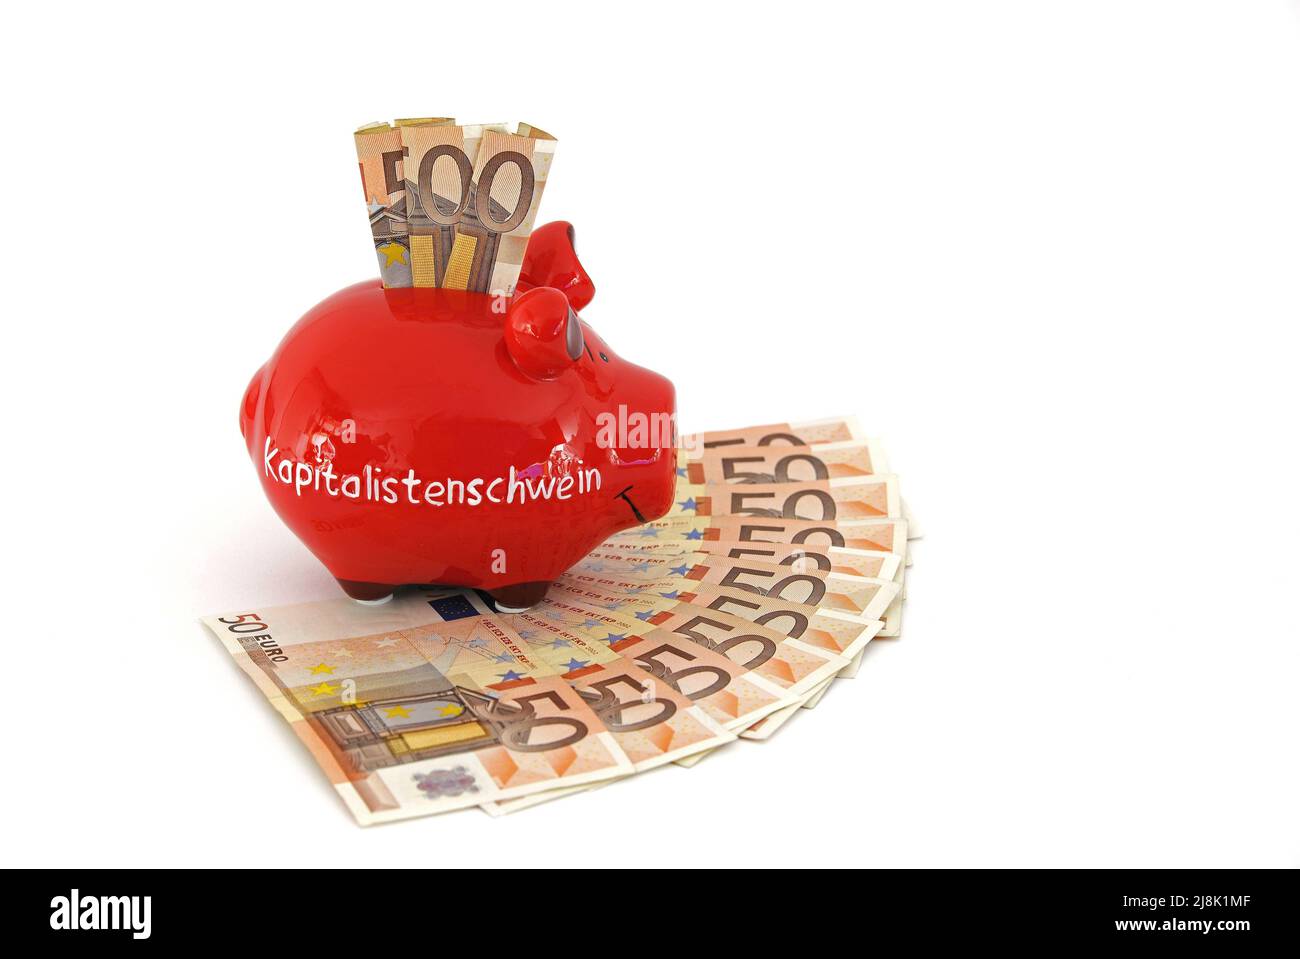 Letras de banco piggy Kapitalistenschwein, cerdo capitalista, sobre monedas de 50 euros Foto de stock